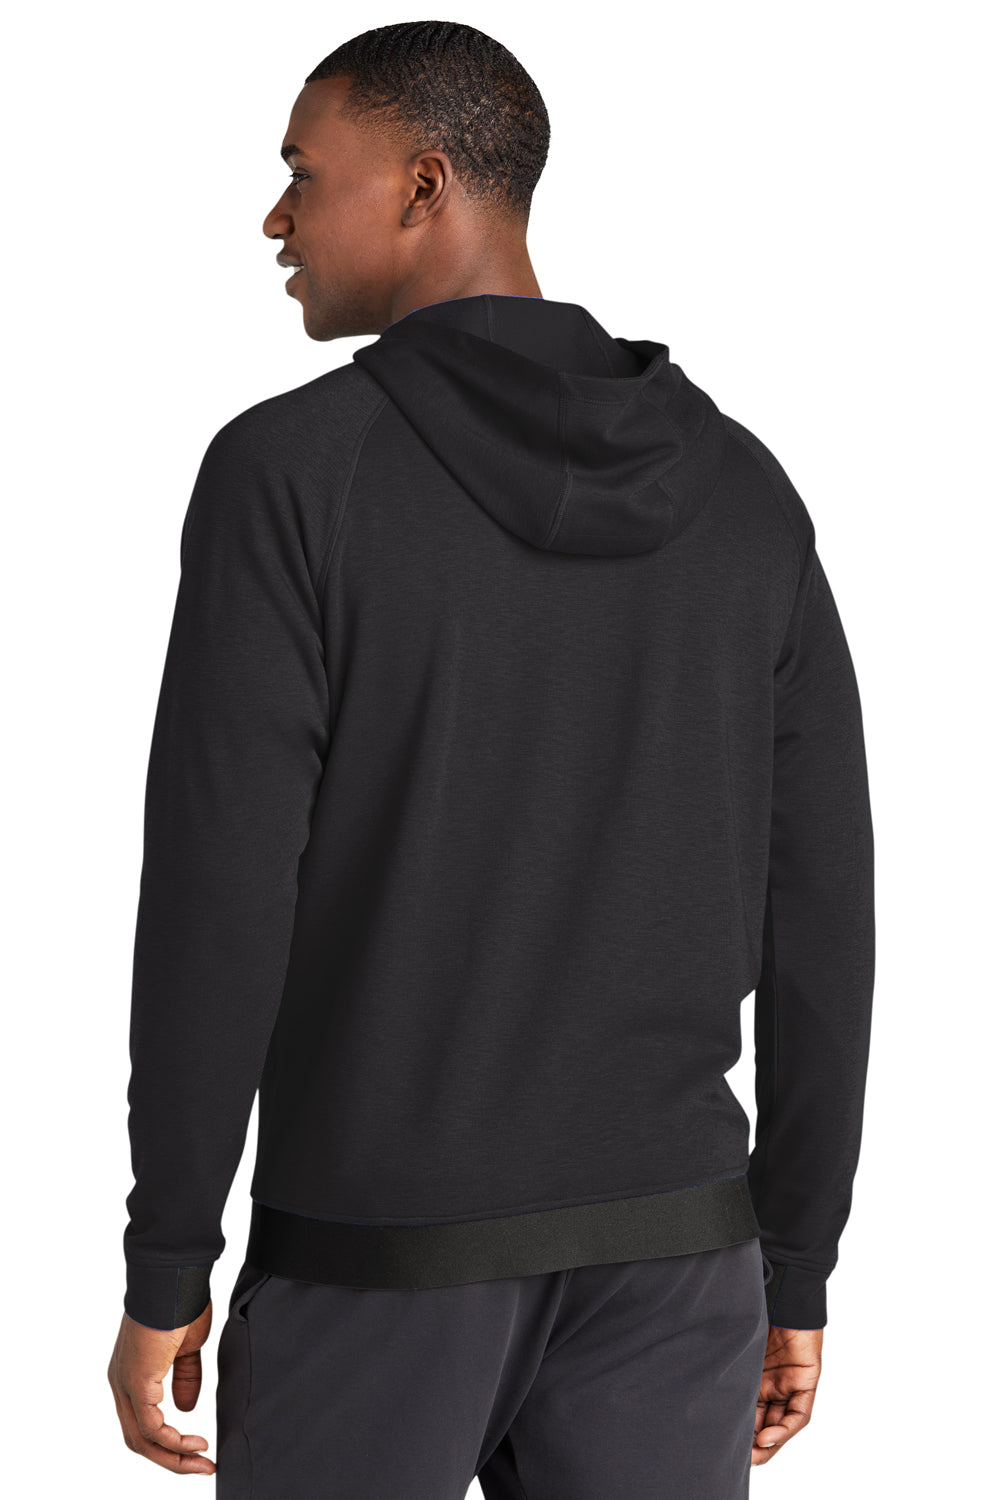 Sport-Tek ST570 Strive PosiCharge Full Zip Hooded Sweatshirt Hoodie Black  Back